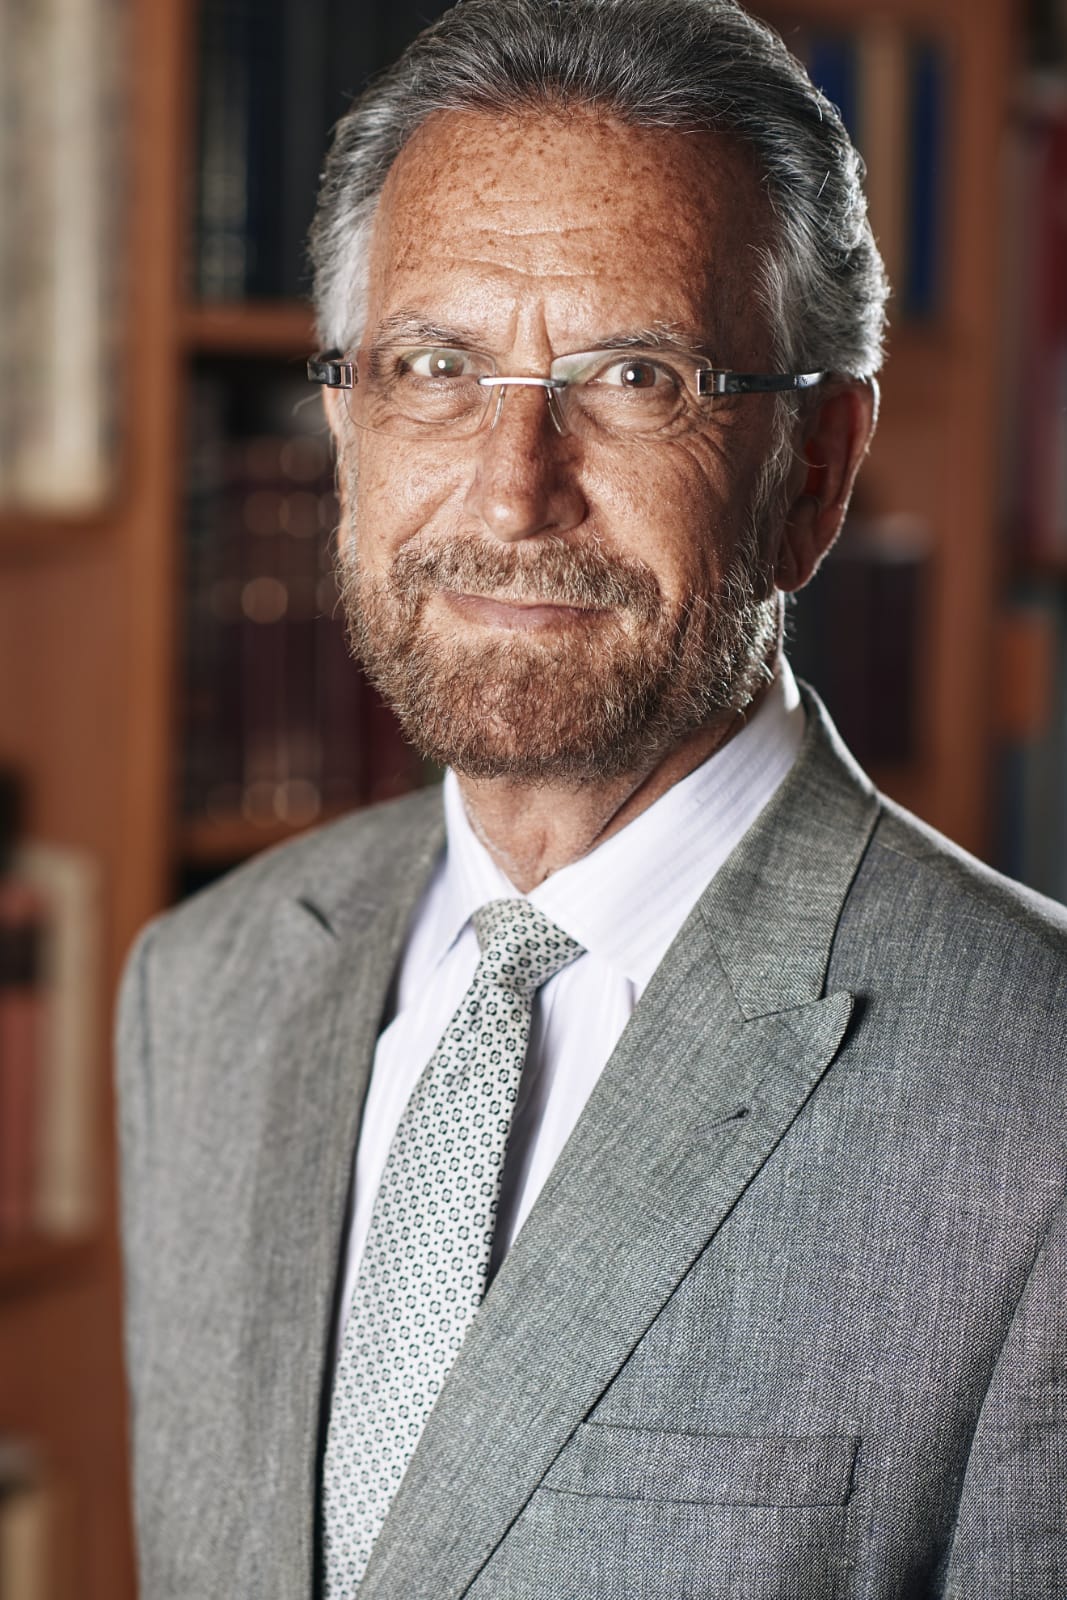 Rabbi David Rosen